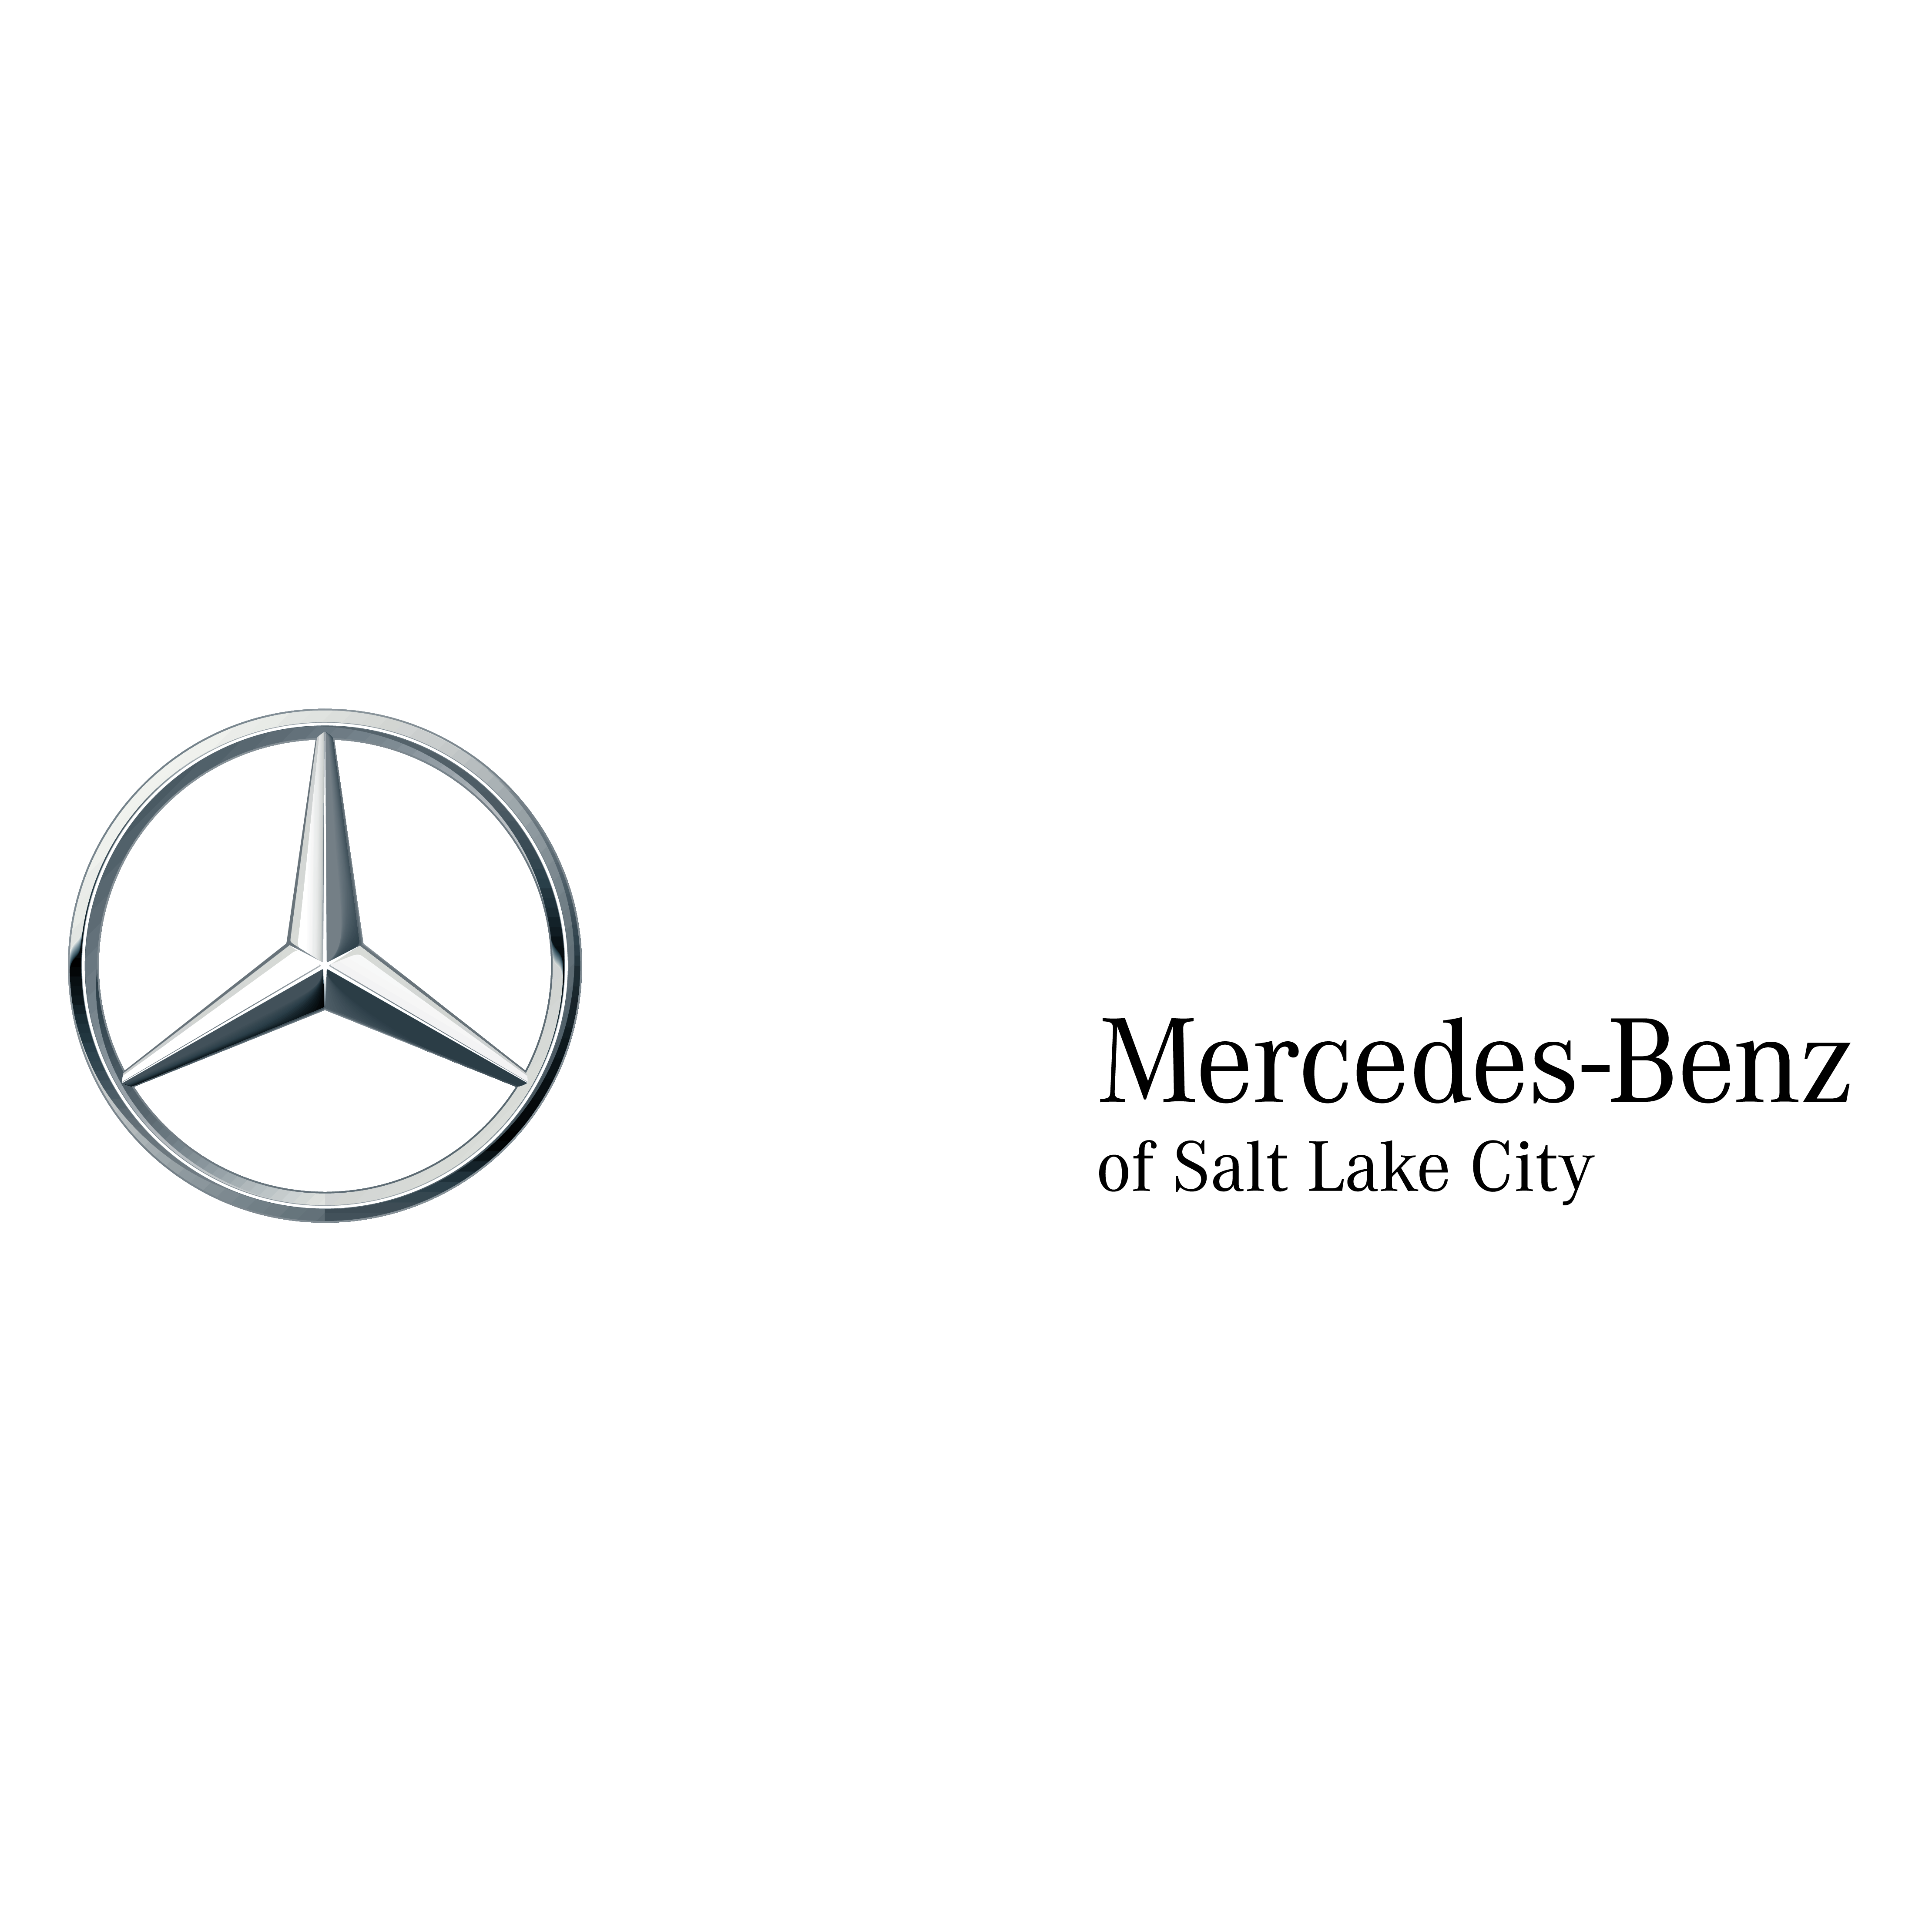 Mercedes-Benz of Salt Lake City